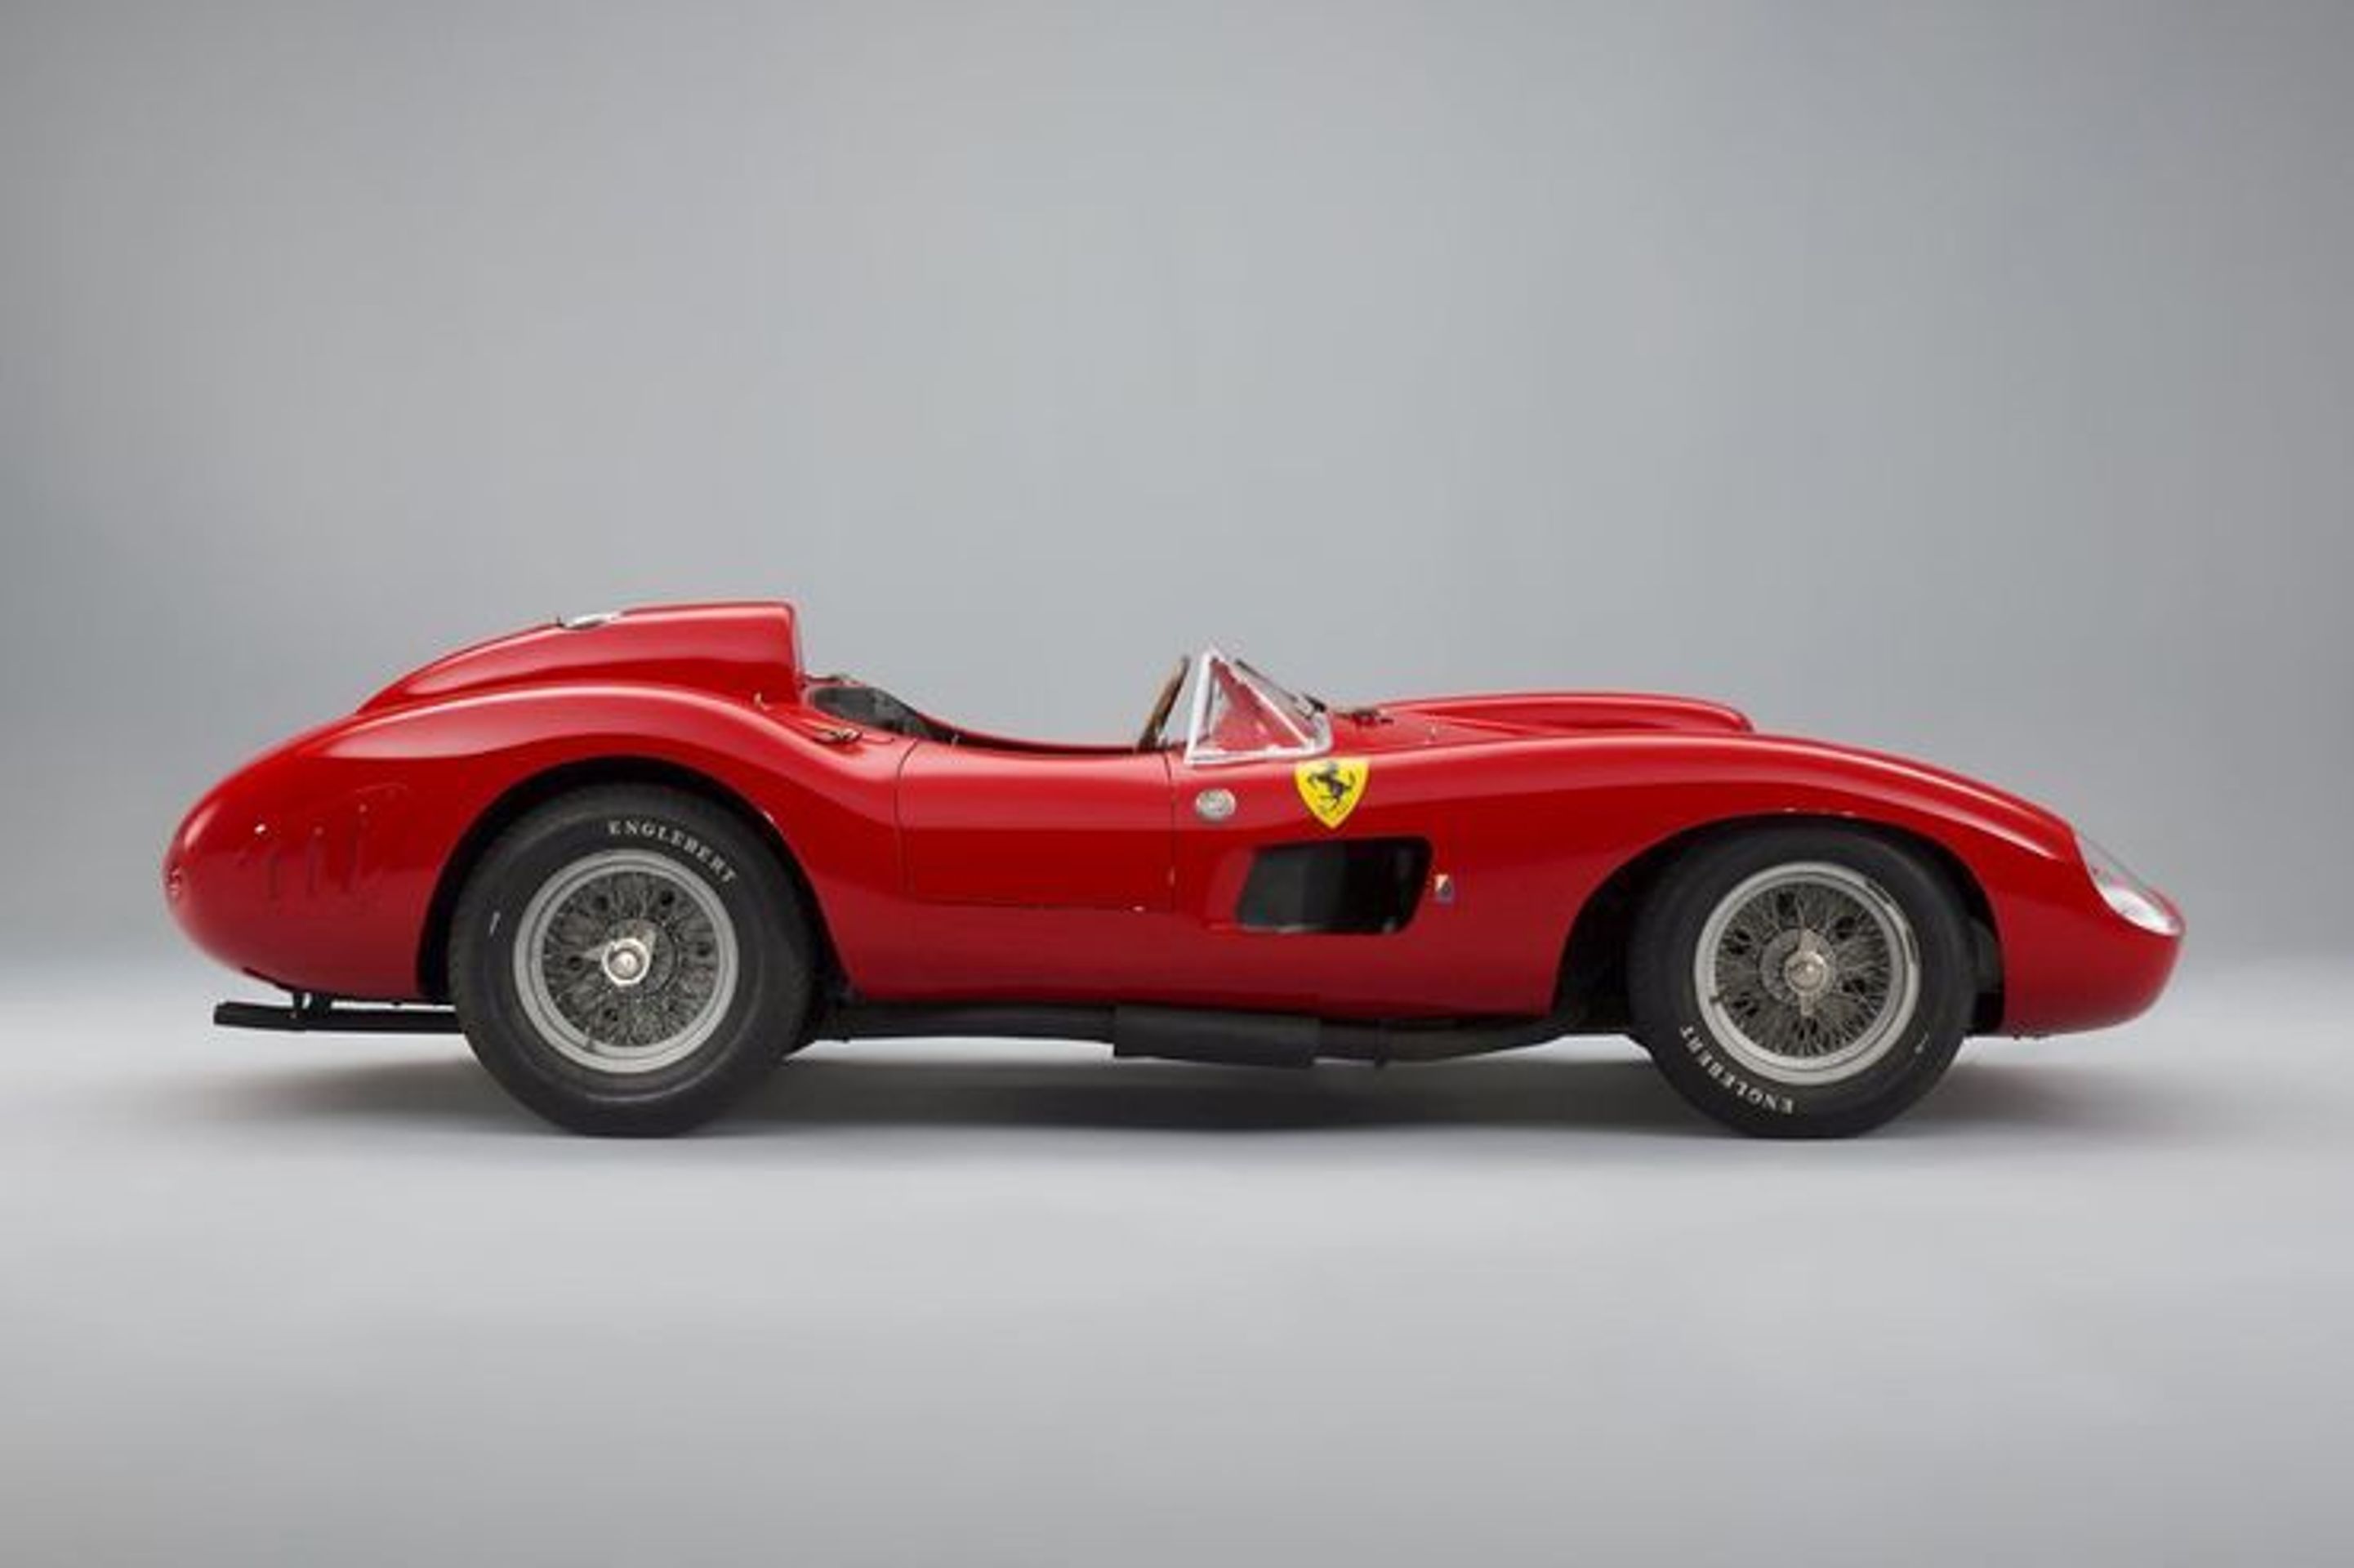 Ferrari 335 S z roku 1957 - 11 nejdražších aut historie (8/11)